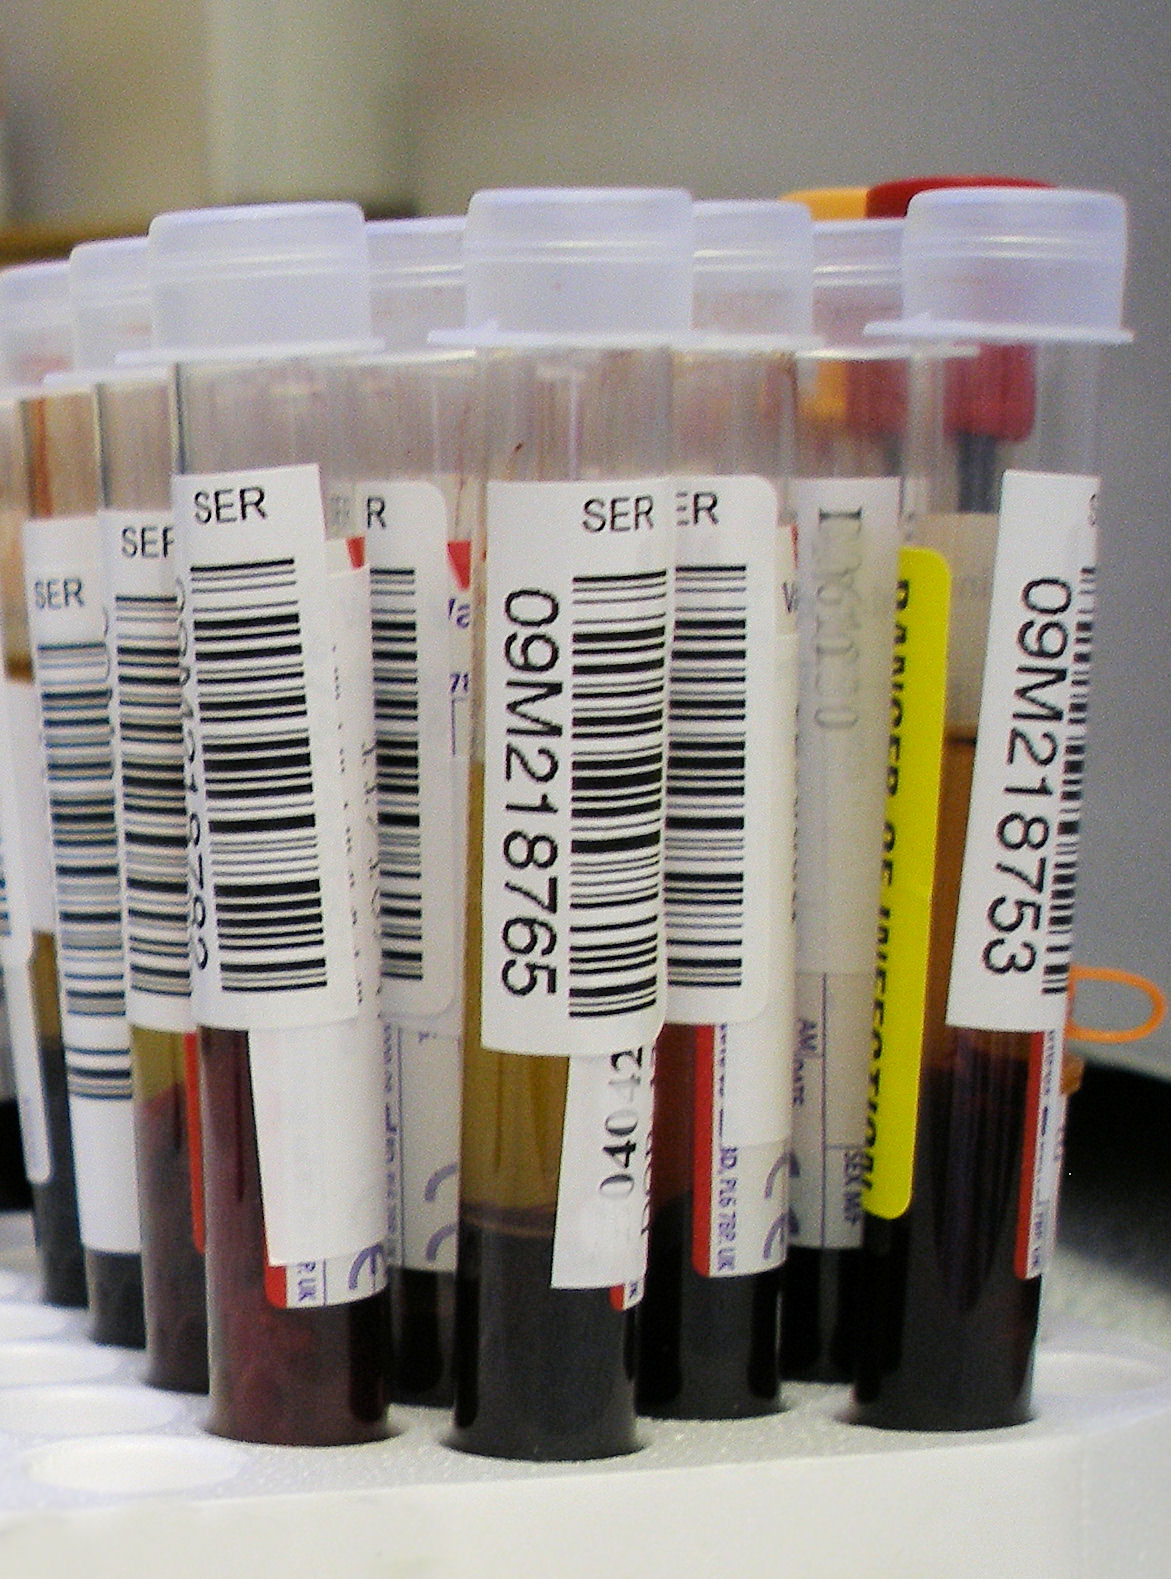 Tubes of human blood